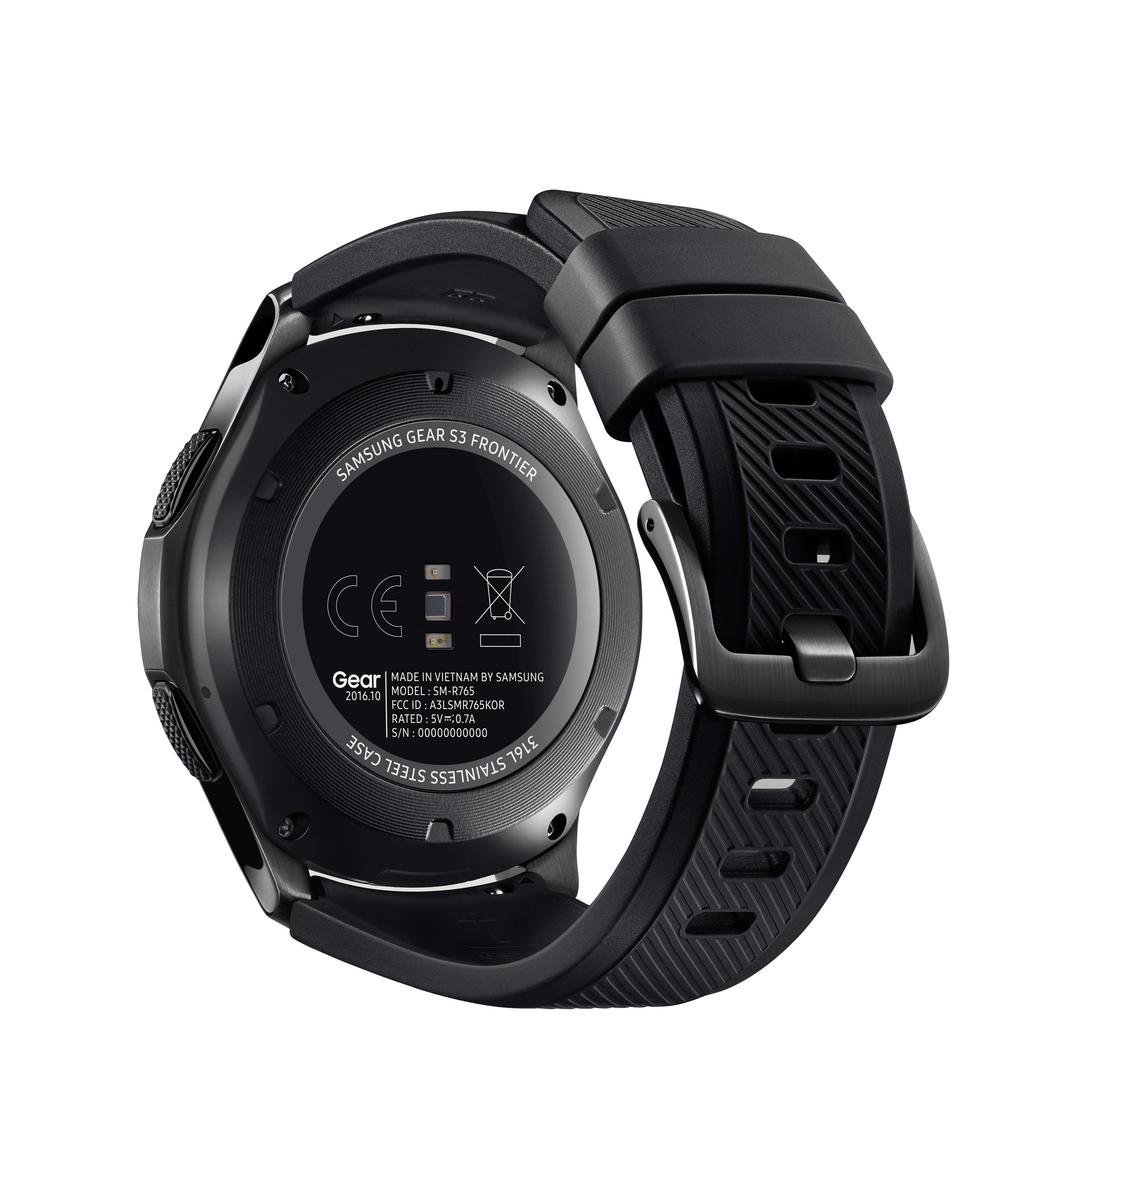 Bol Com Samsung Gear S3 Frontier Smartwatch 46 Mm Zwart